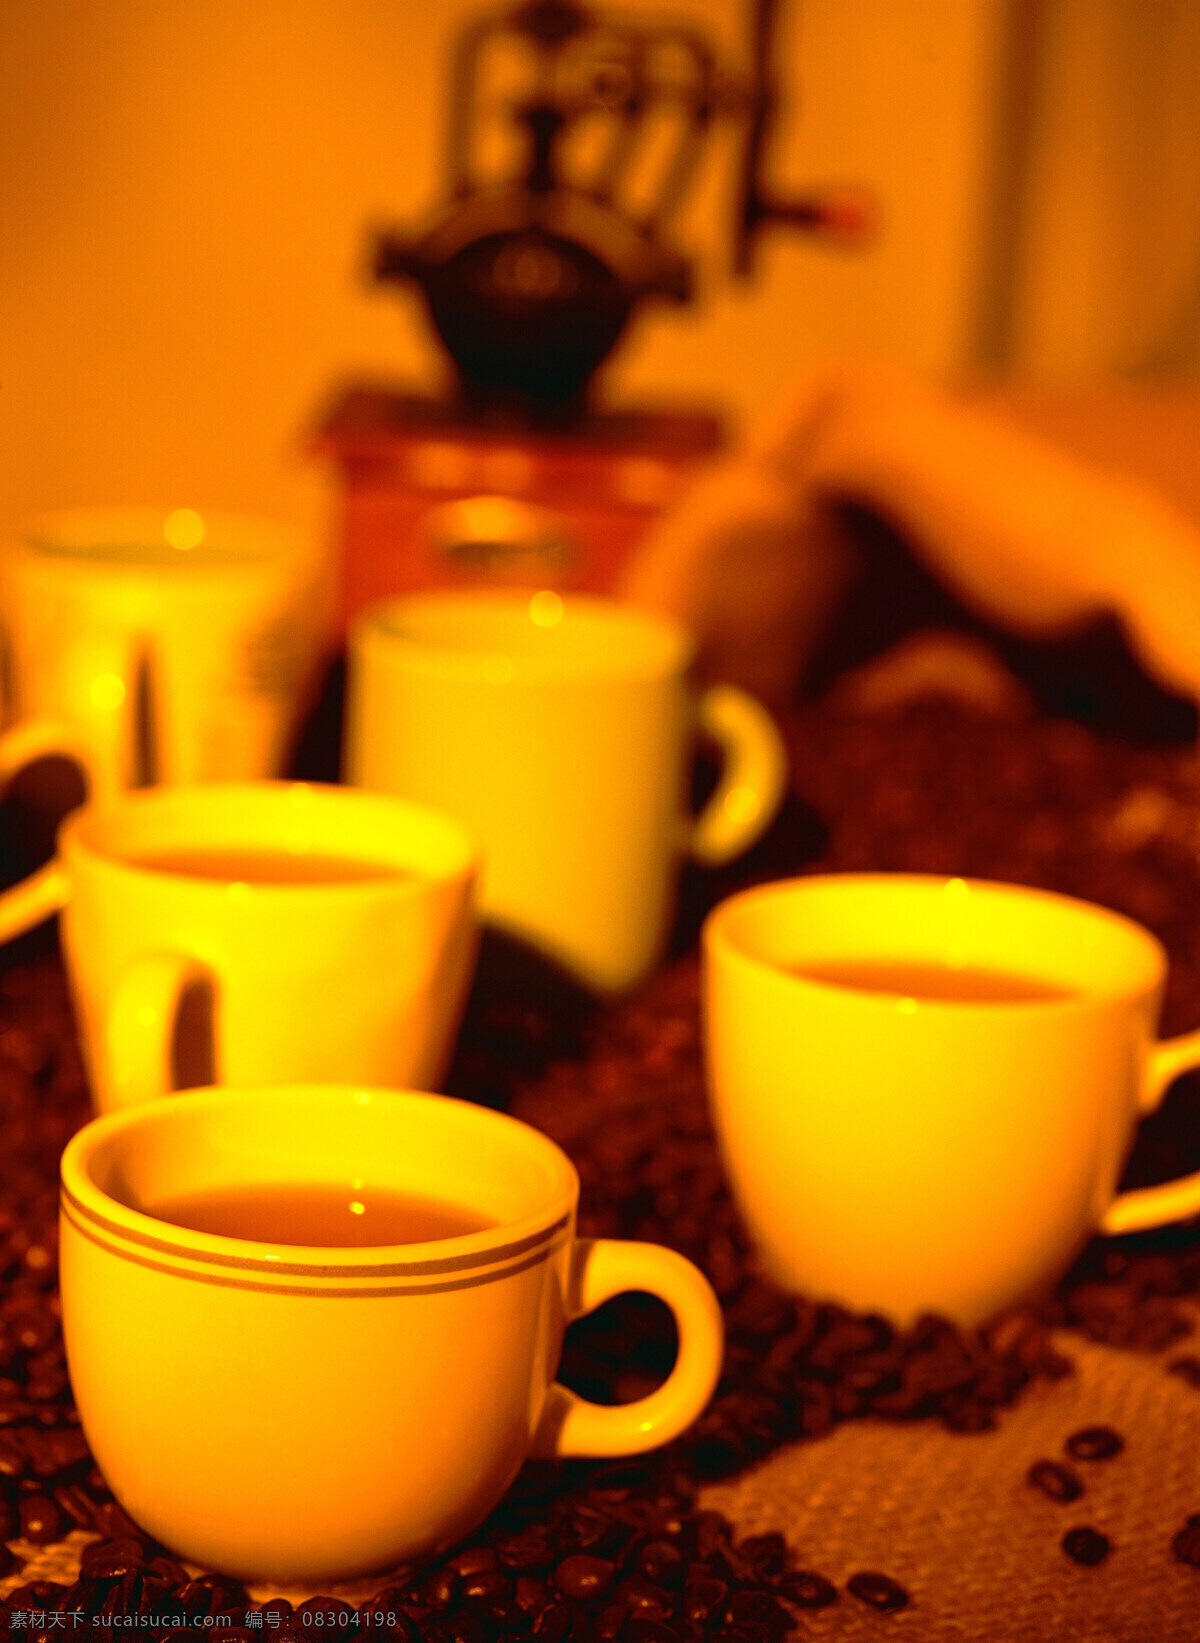 咖啡豆 很多 杯 咖啡 一堆咖啡豆 颗粒 果实 饱满 许多 coffee 浓香 褐色 杯子 很多杯 麻袋 包装 铺垫 高清图片 咖啡图片 餐饮美食